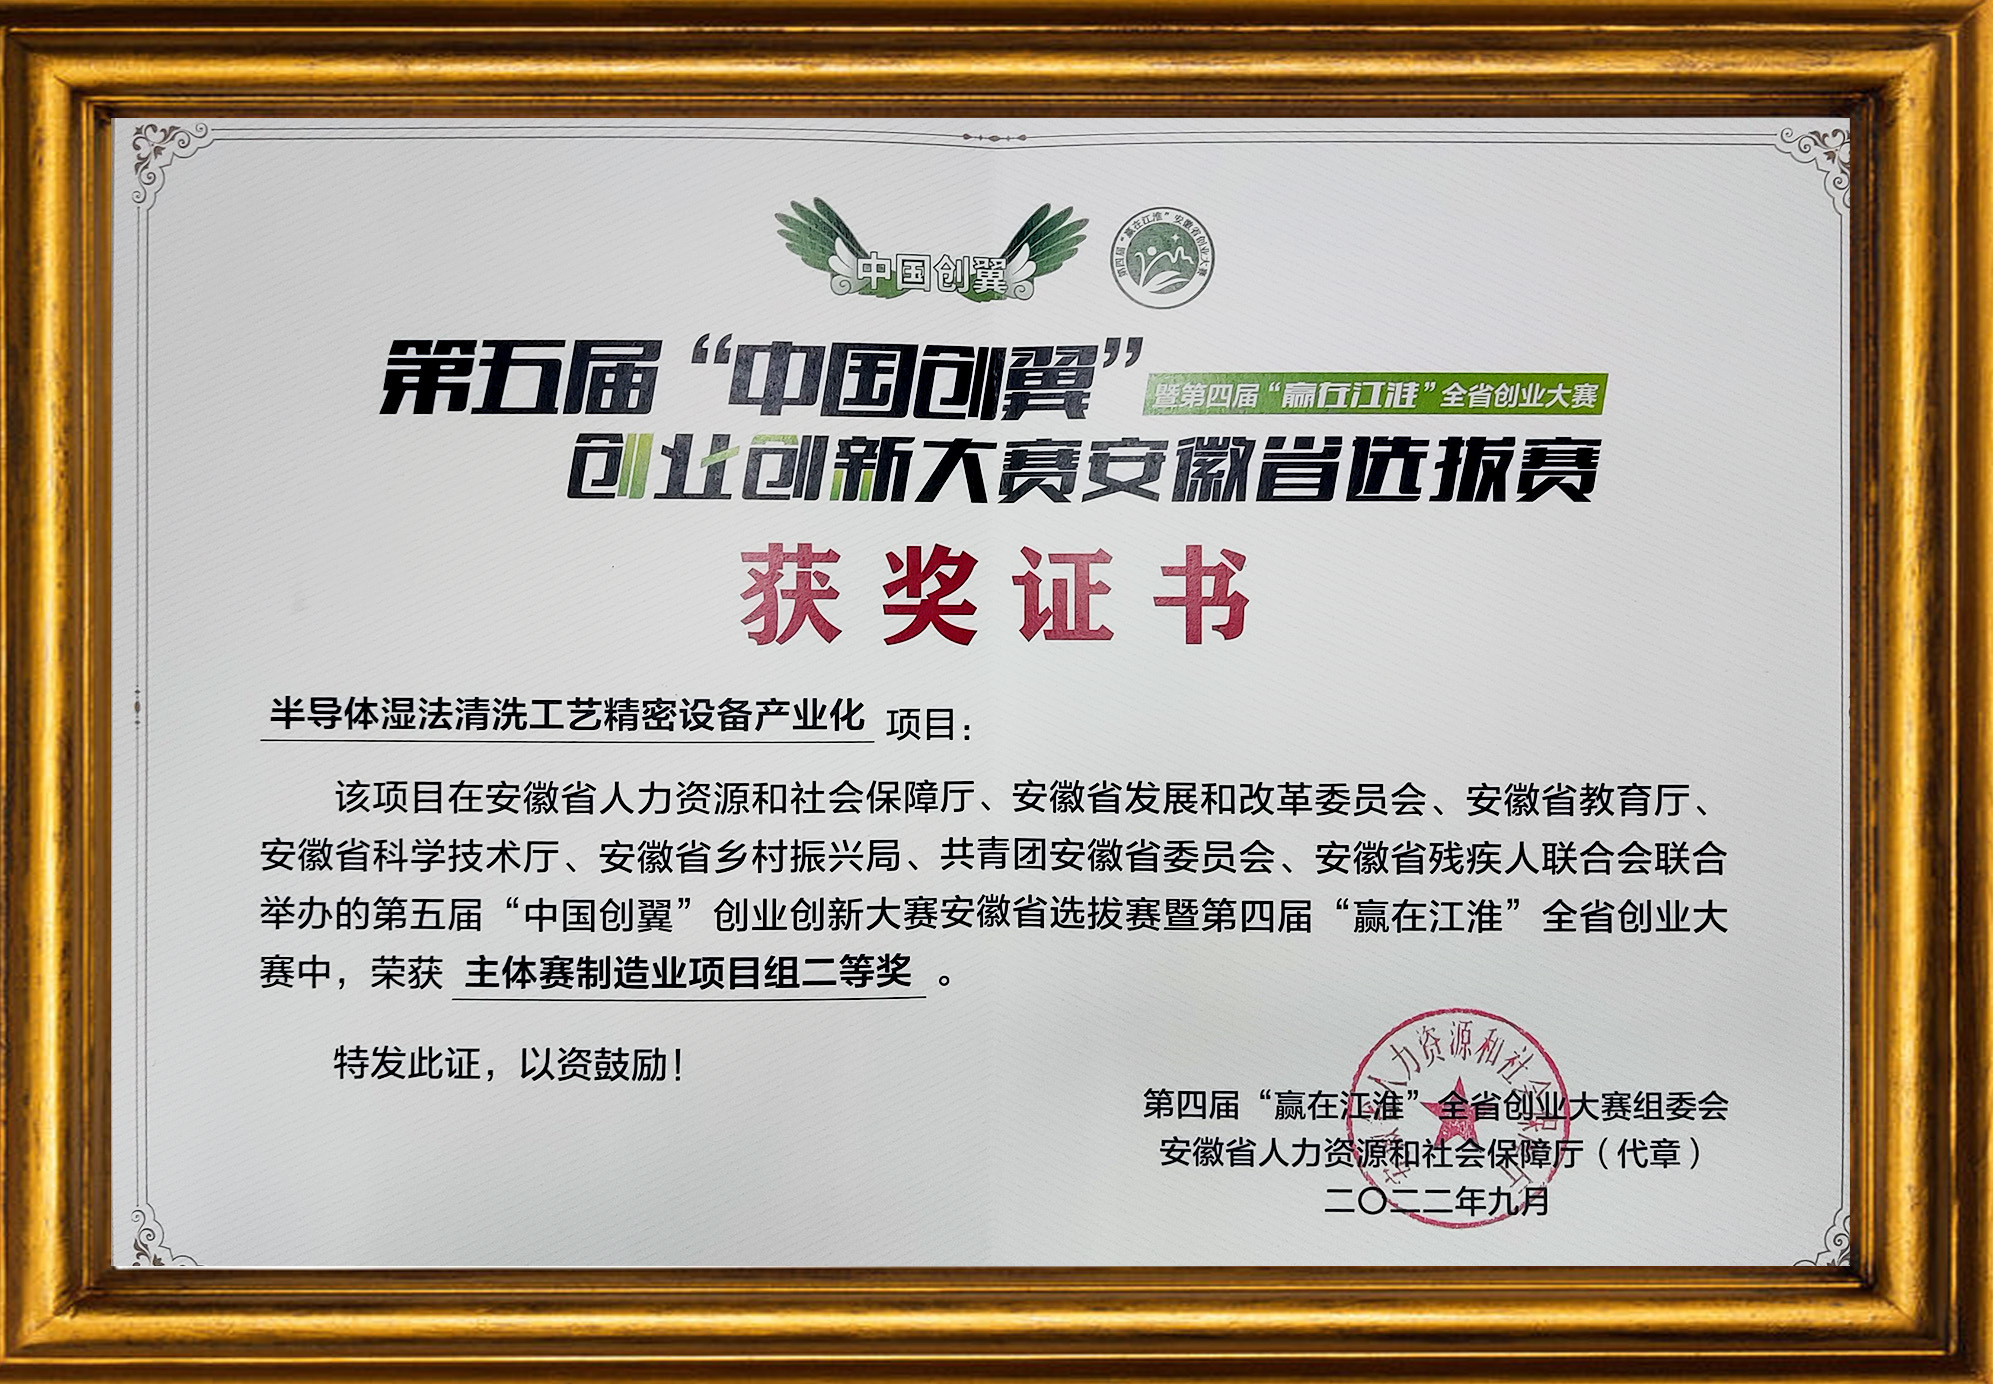 第五届“中国创翼”创业创新大赛安徽省选拔赛-二等奖荣誉证书